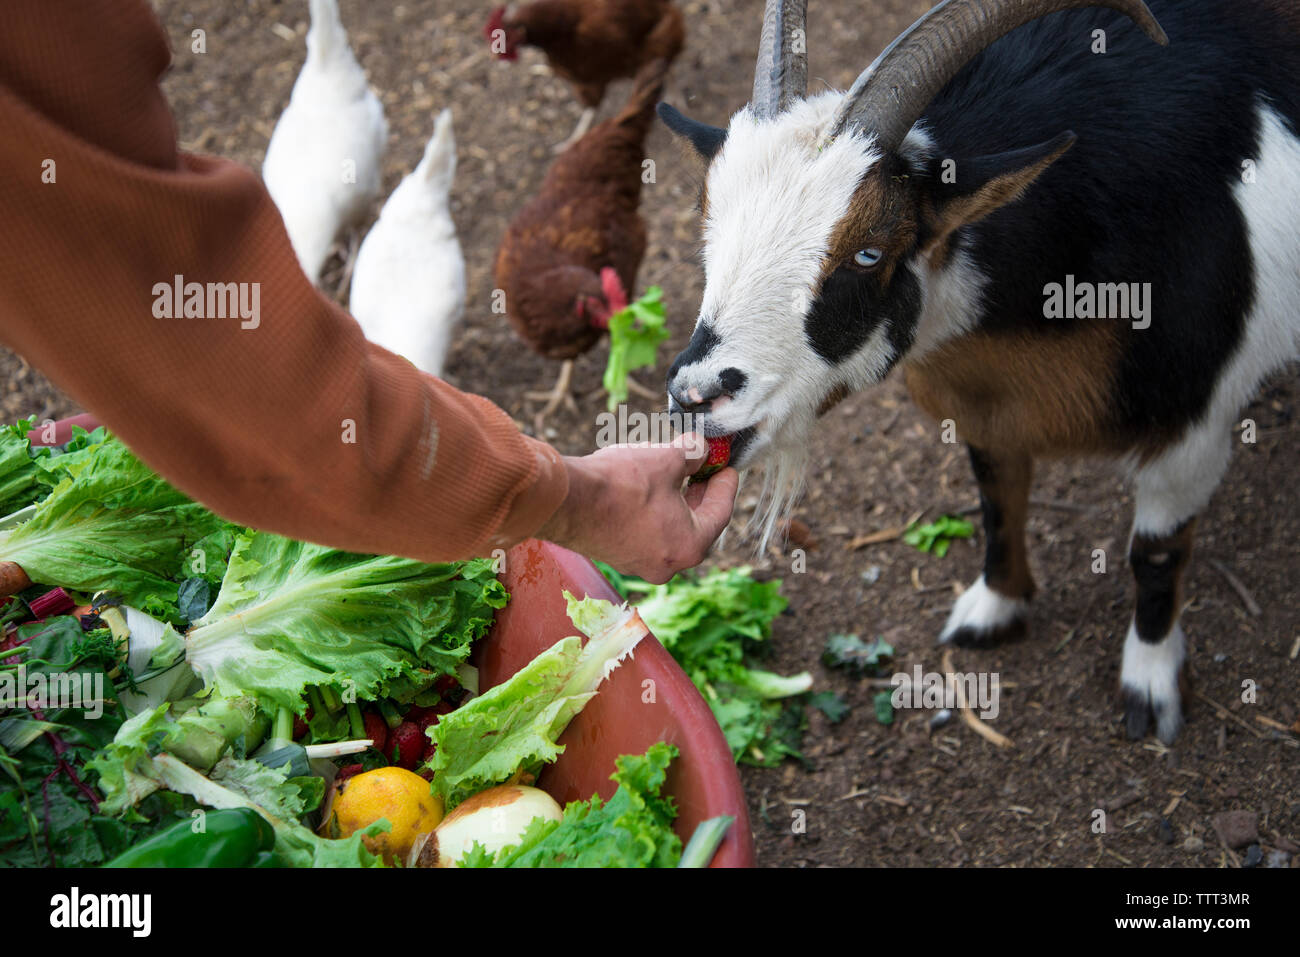 Cropped image of man feeding goat Stock Photo